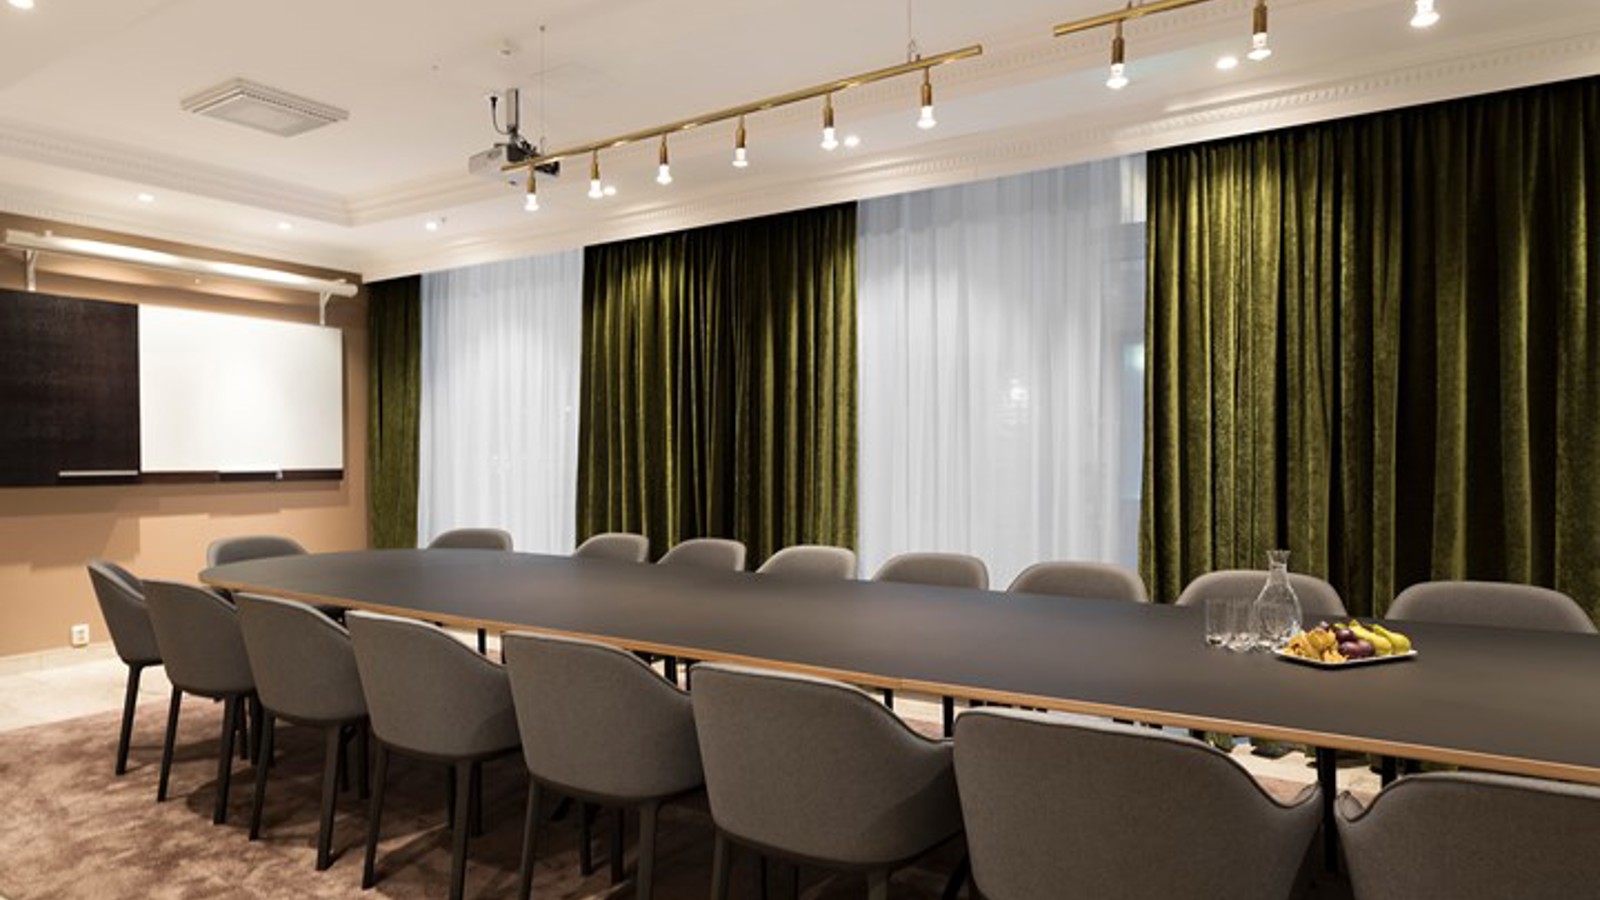 Konferensrum styrelsesittning, grå stolar, gröna gardiner